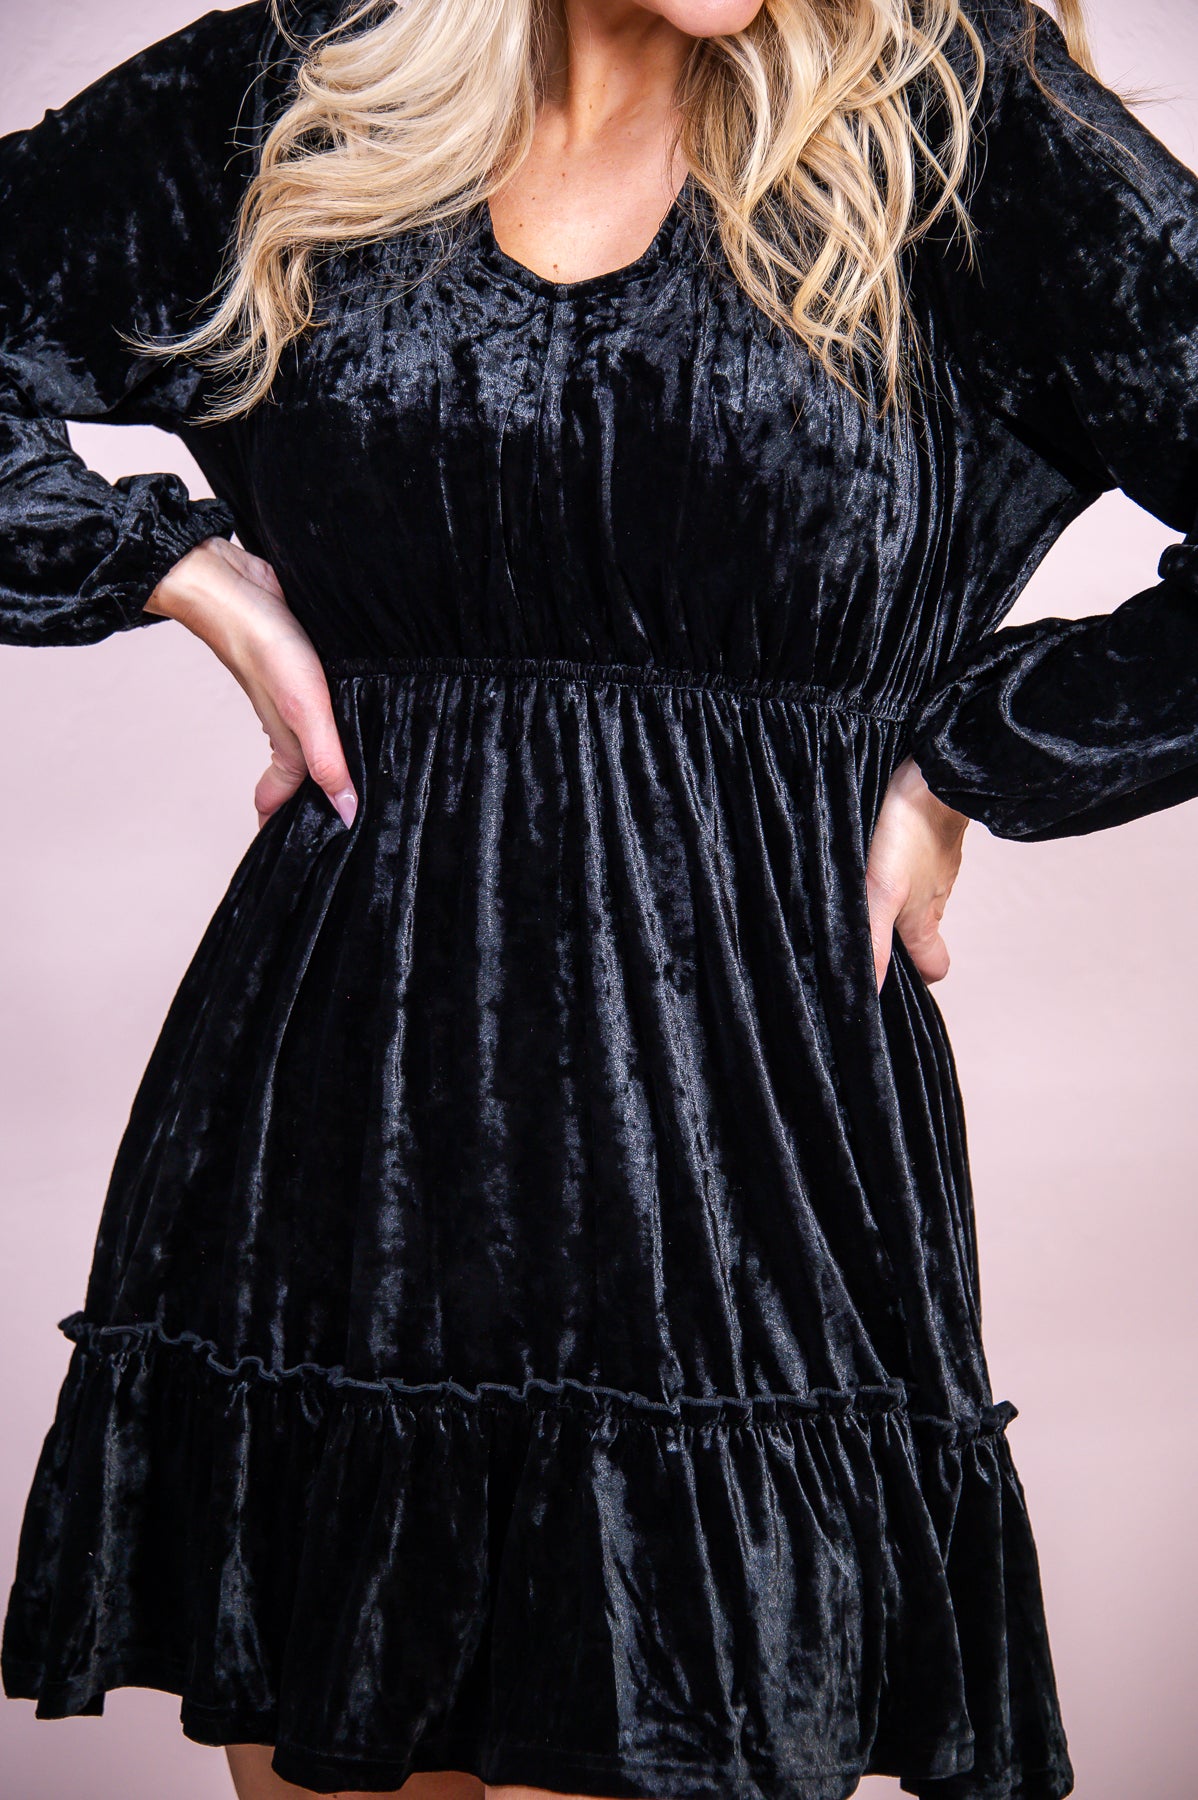 Life Of Luxury Black Solid Velvet V Neck Dress - D5014BK